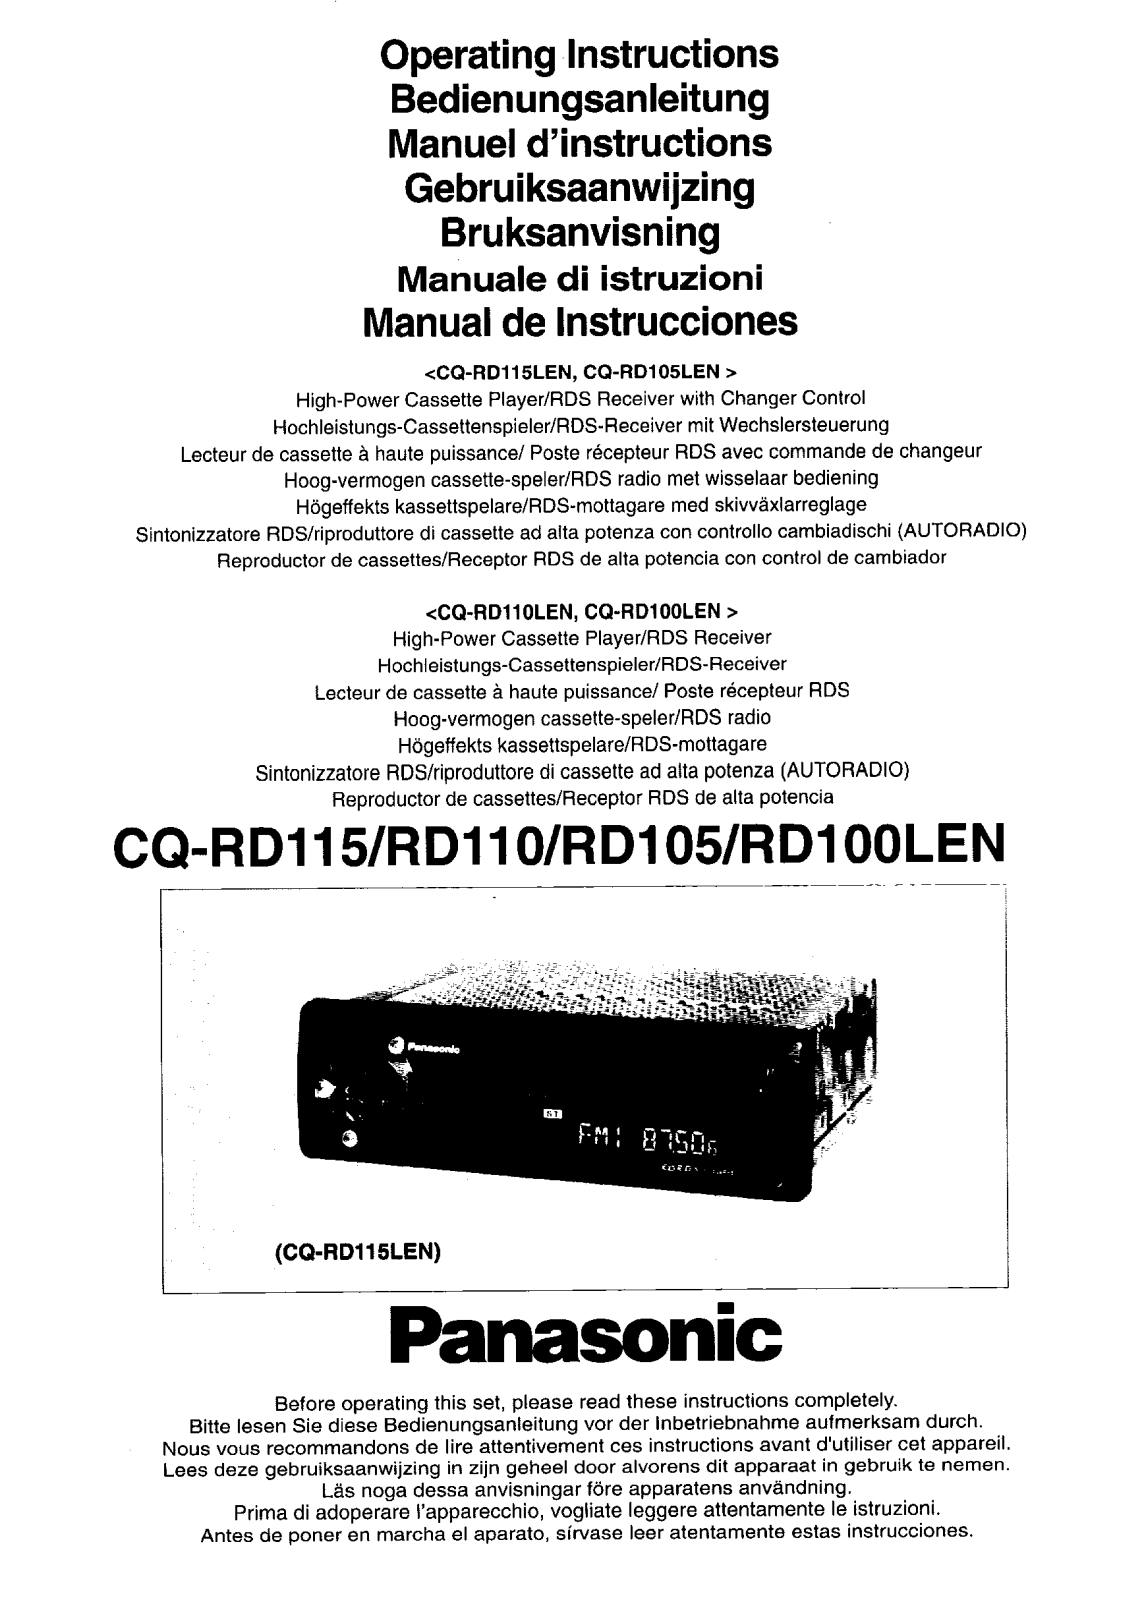 Panasonic CQ-RD105, CQ-RD110, CQ-RD100, CQ-RD115 User Manual